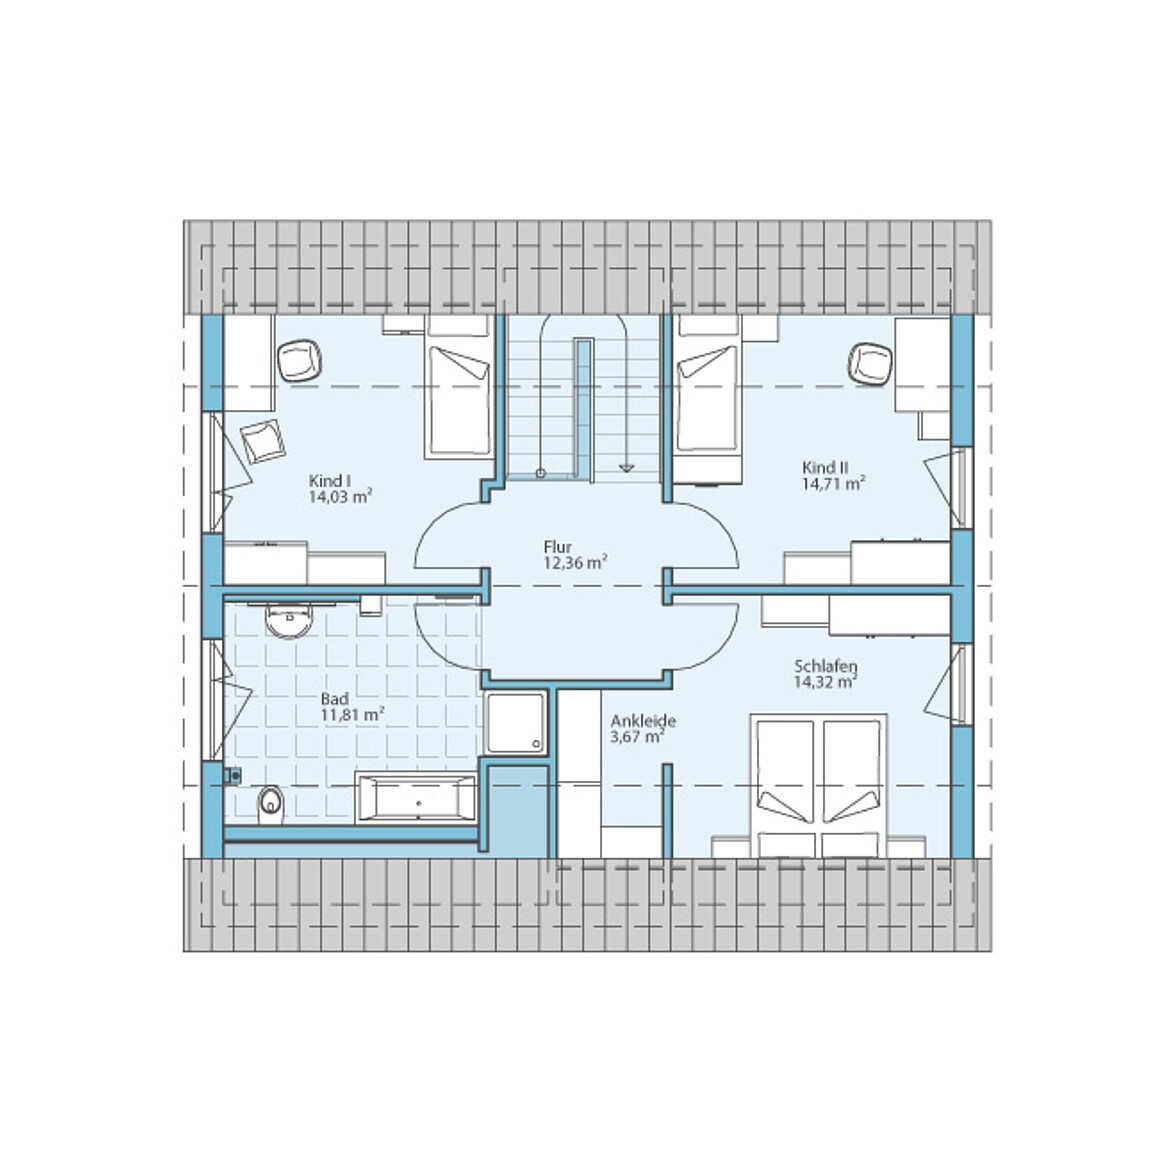 Prefabricated house Variant 45-154: Top floor plan